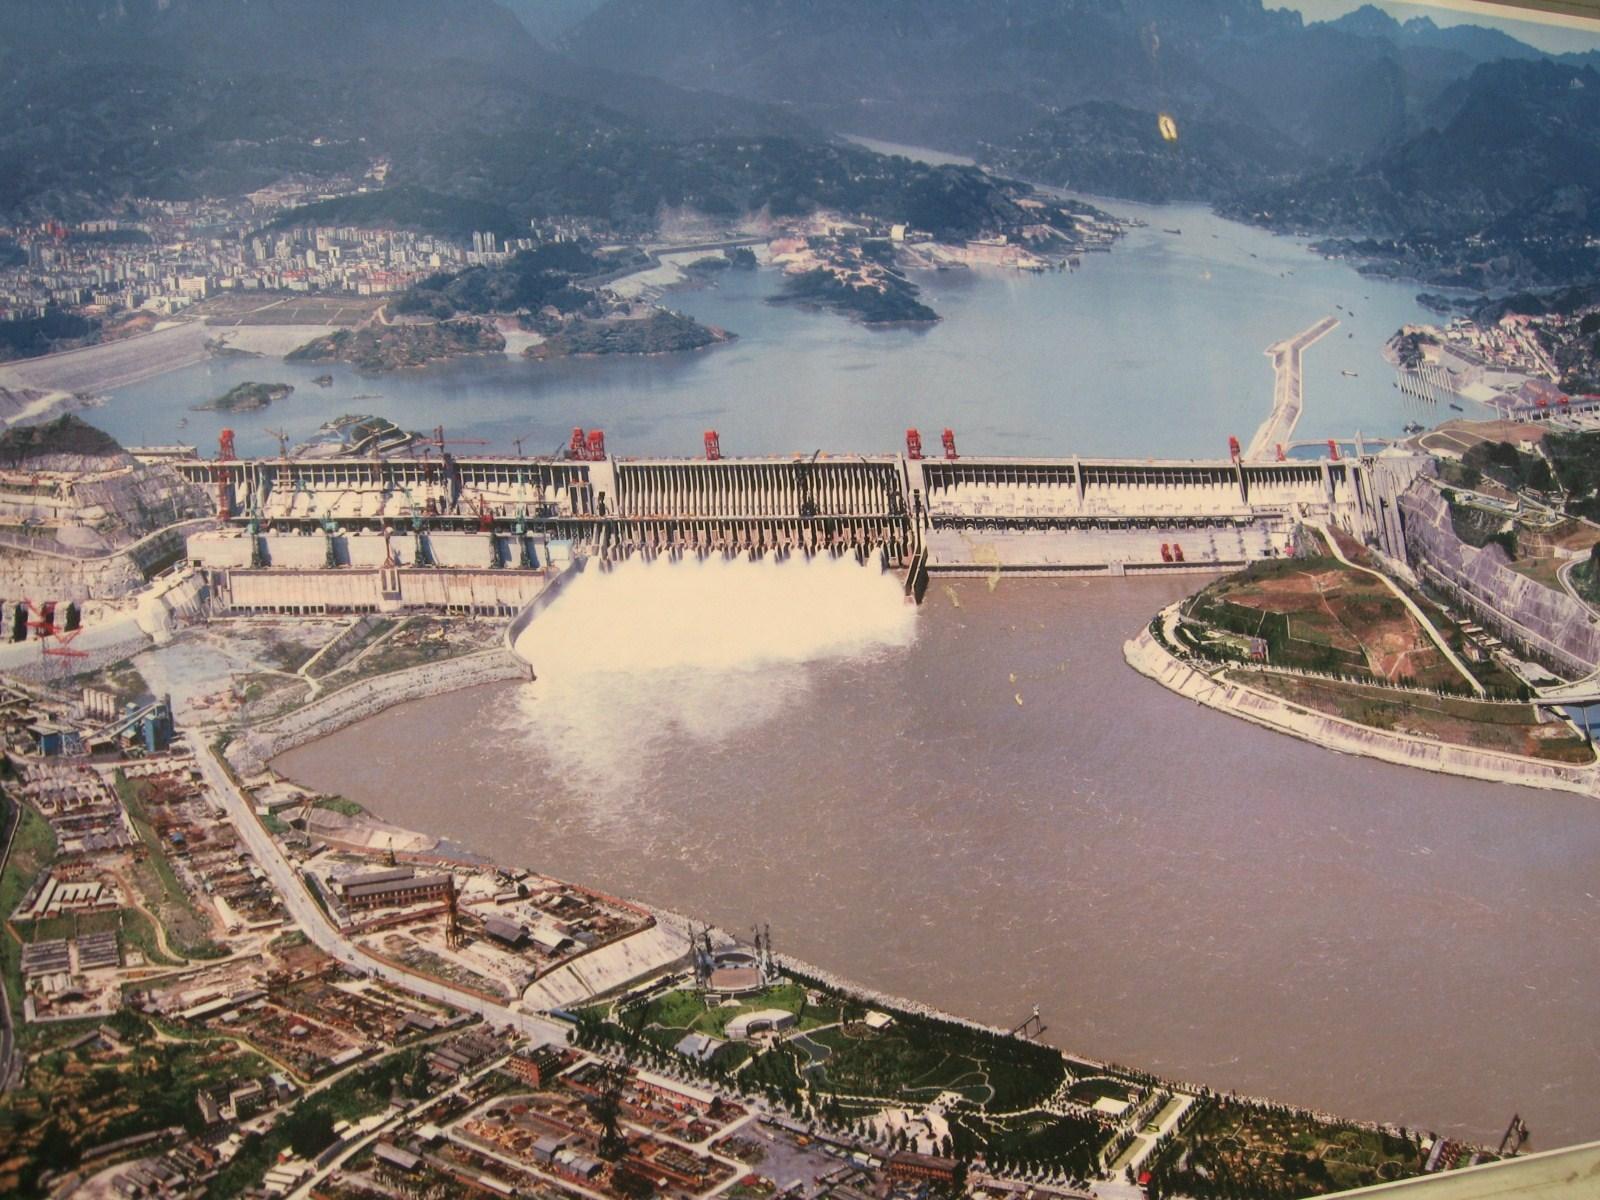 Three Gorges Dam, China